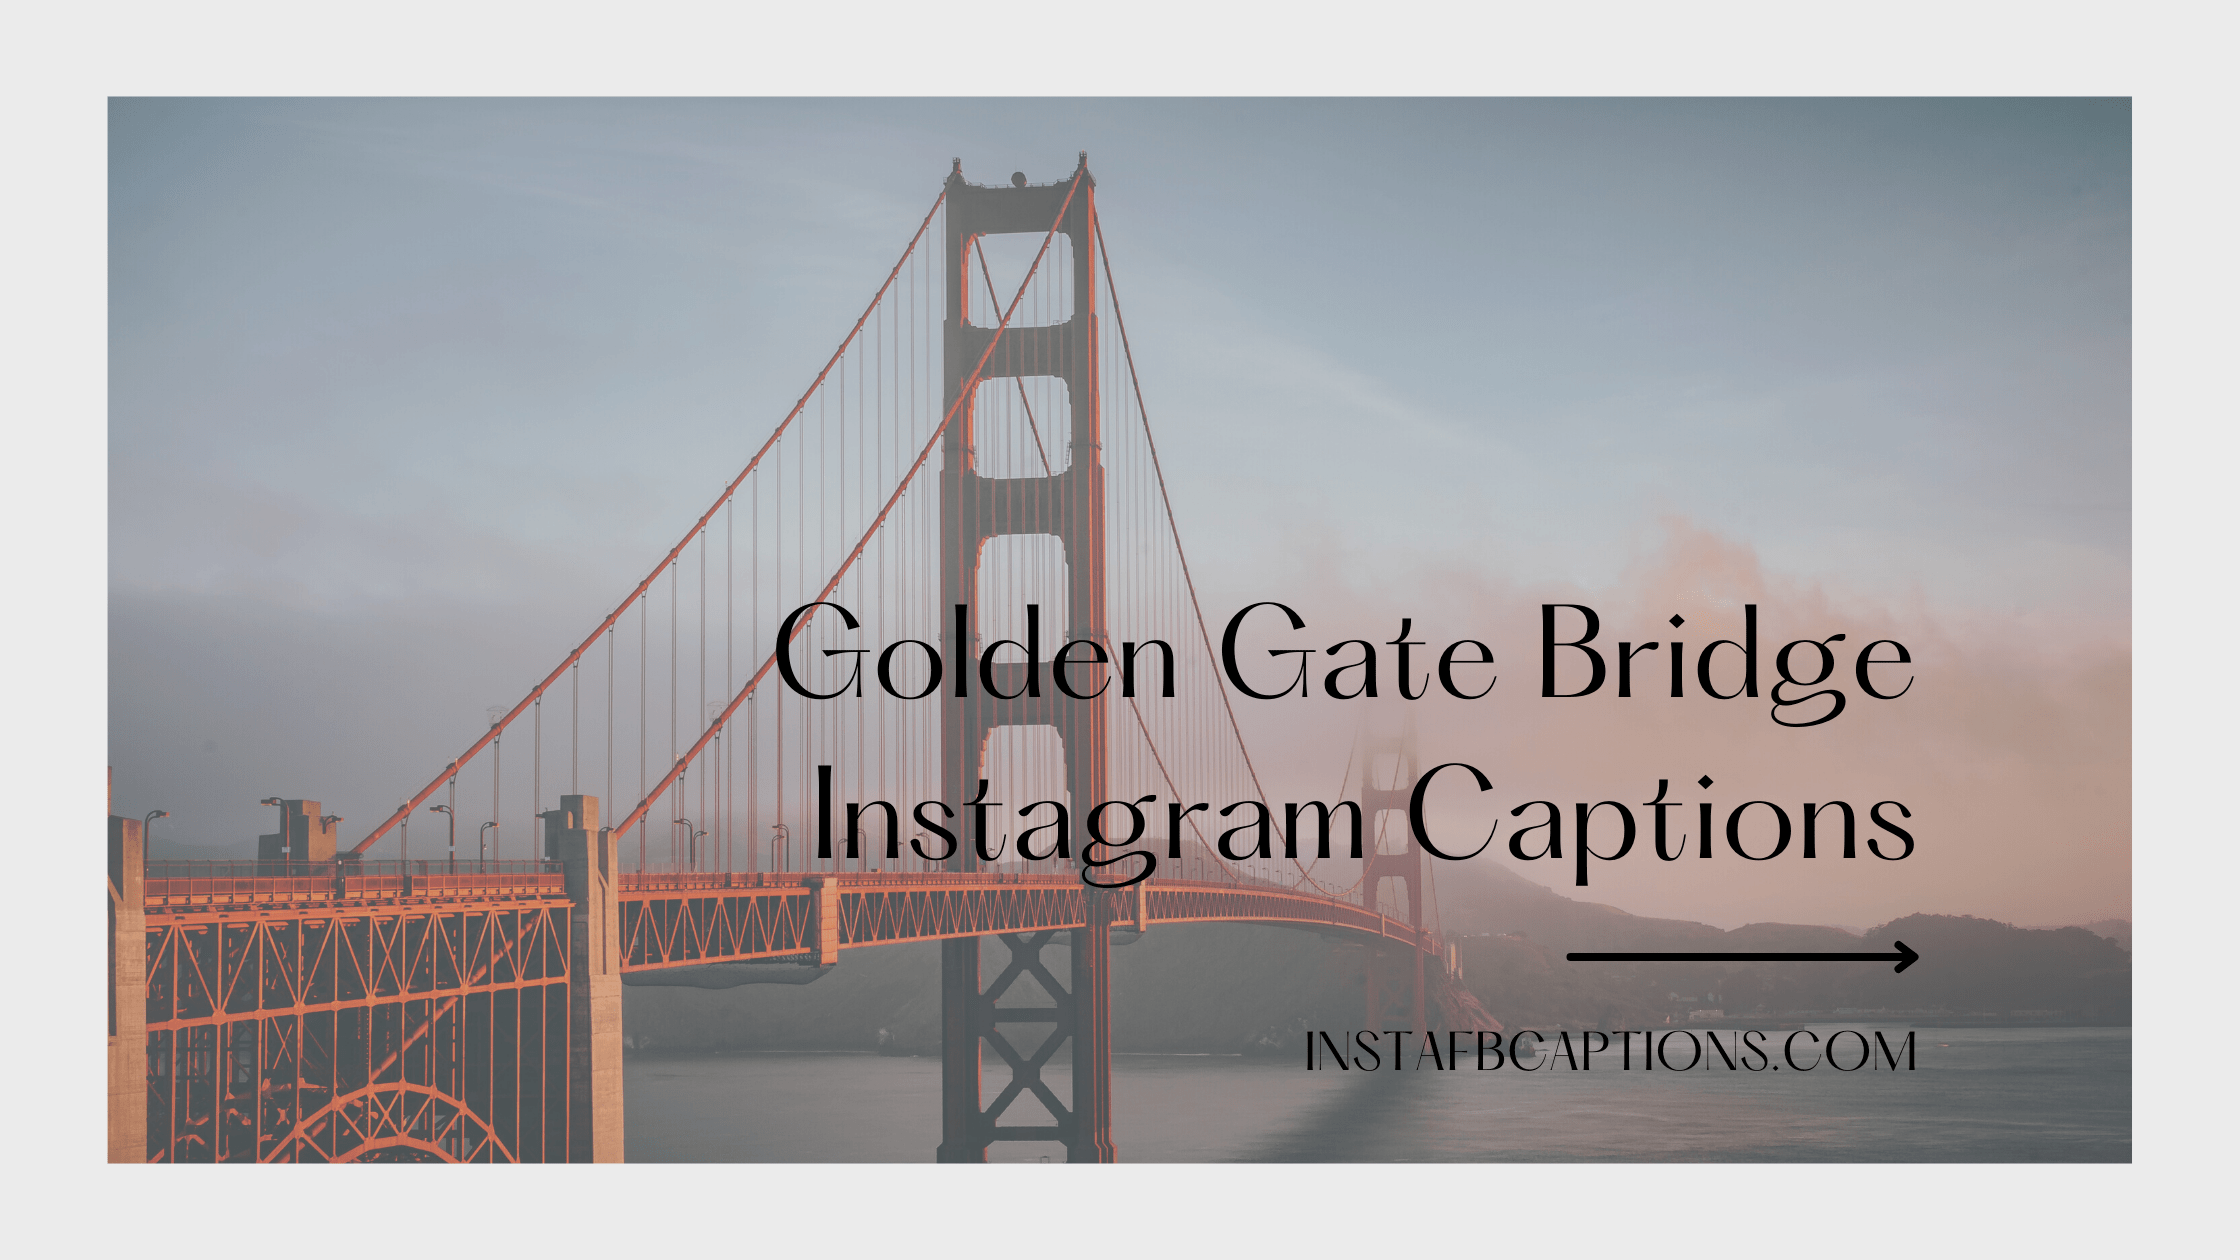 Golden Gate Bridge Instagram Captions  - Golden Gate Bridge Instagram Captions - 102 Golden Gate Bridge Instagram Captions, Hashtags Quotes in 2023